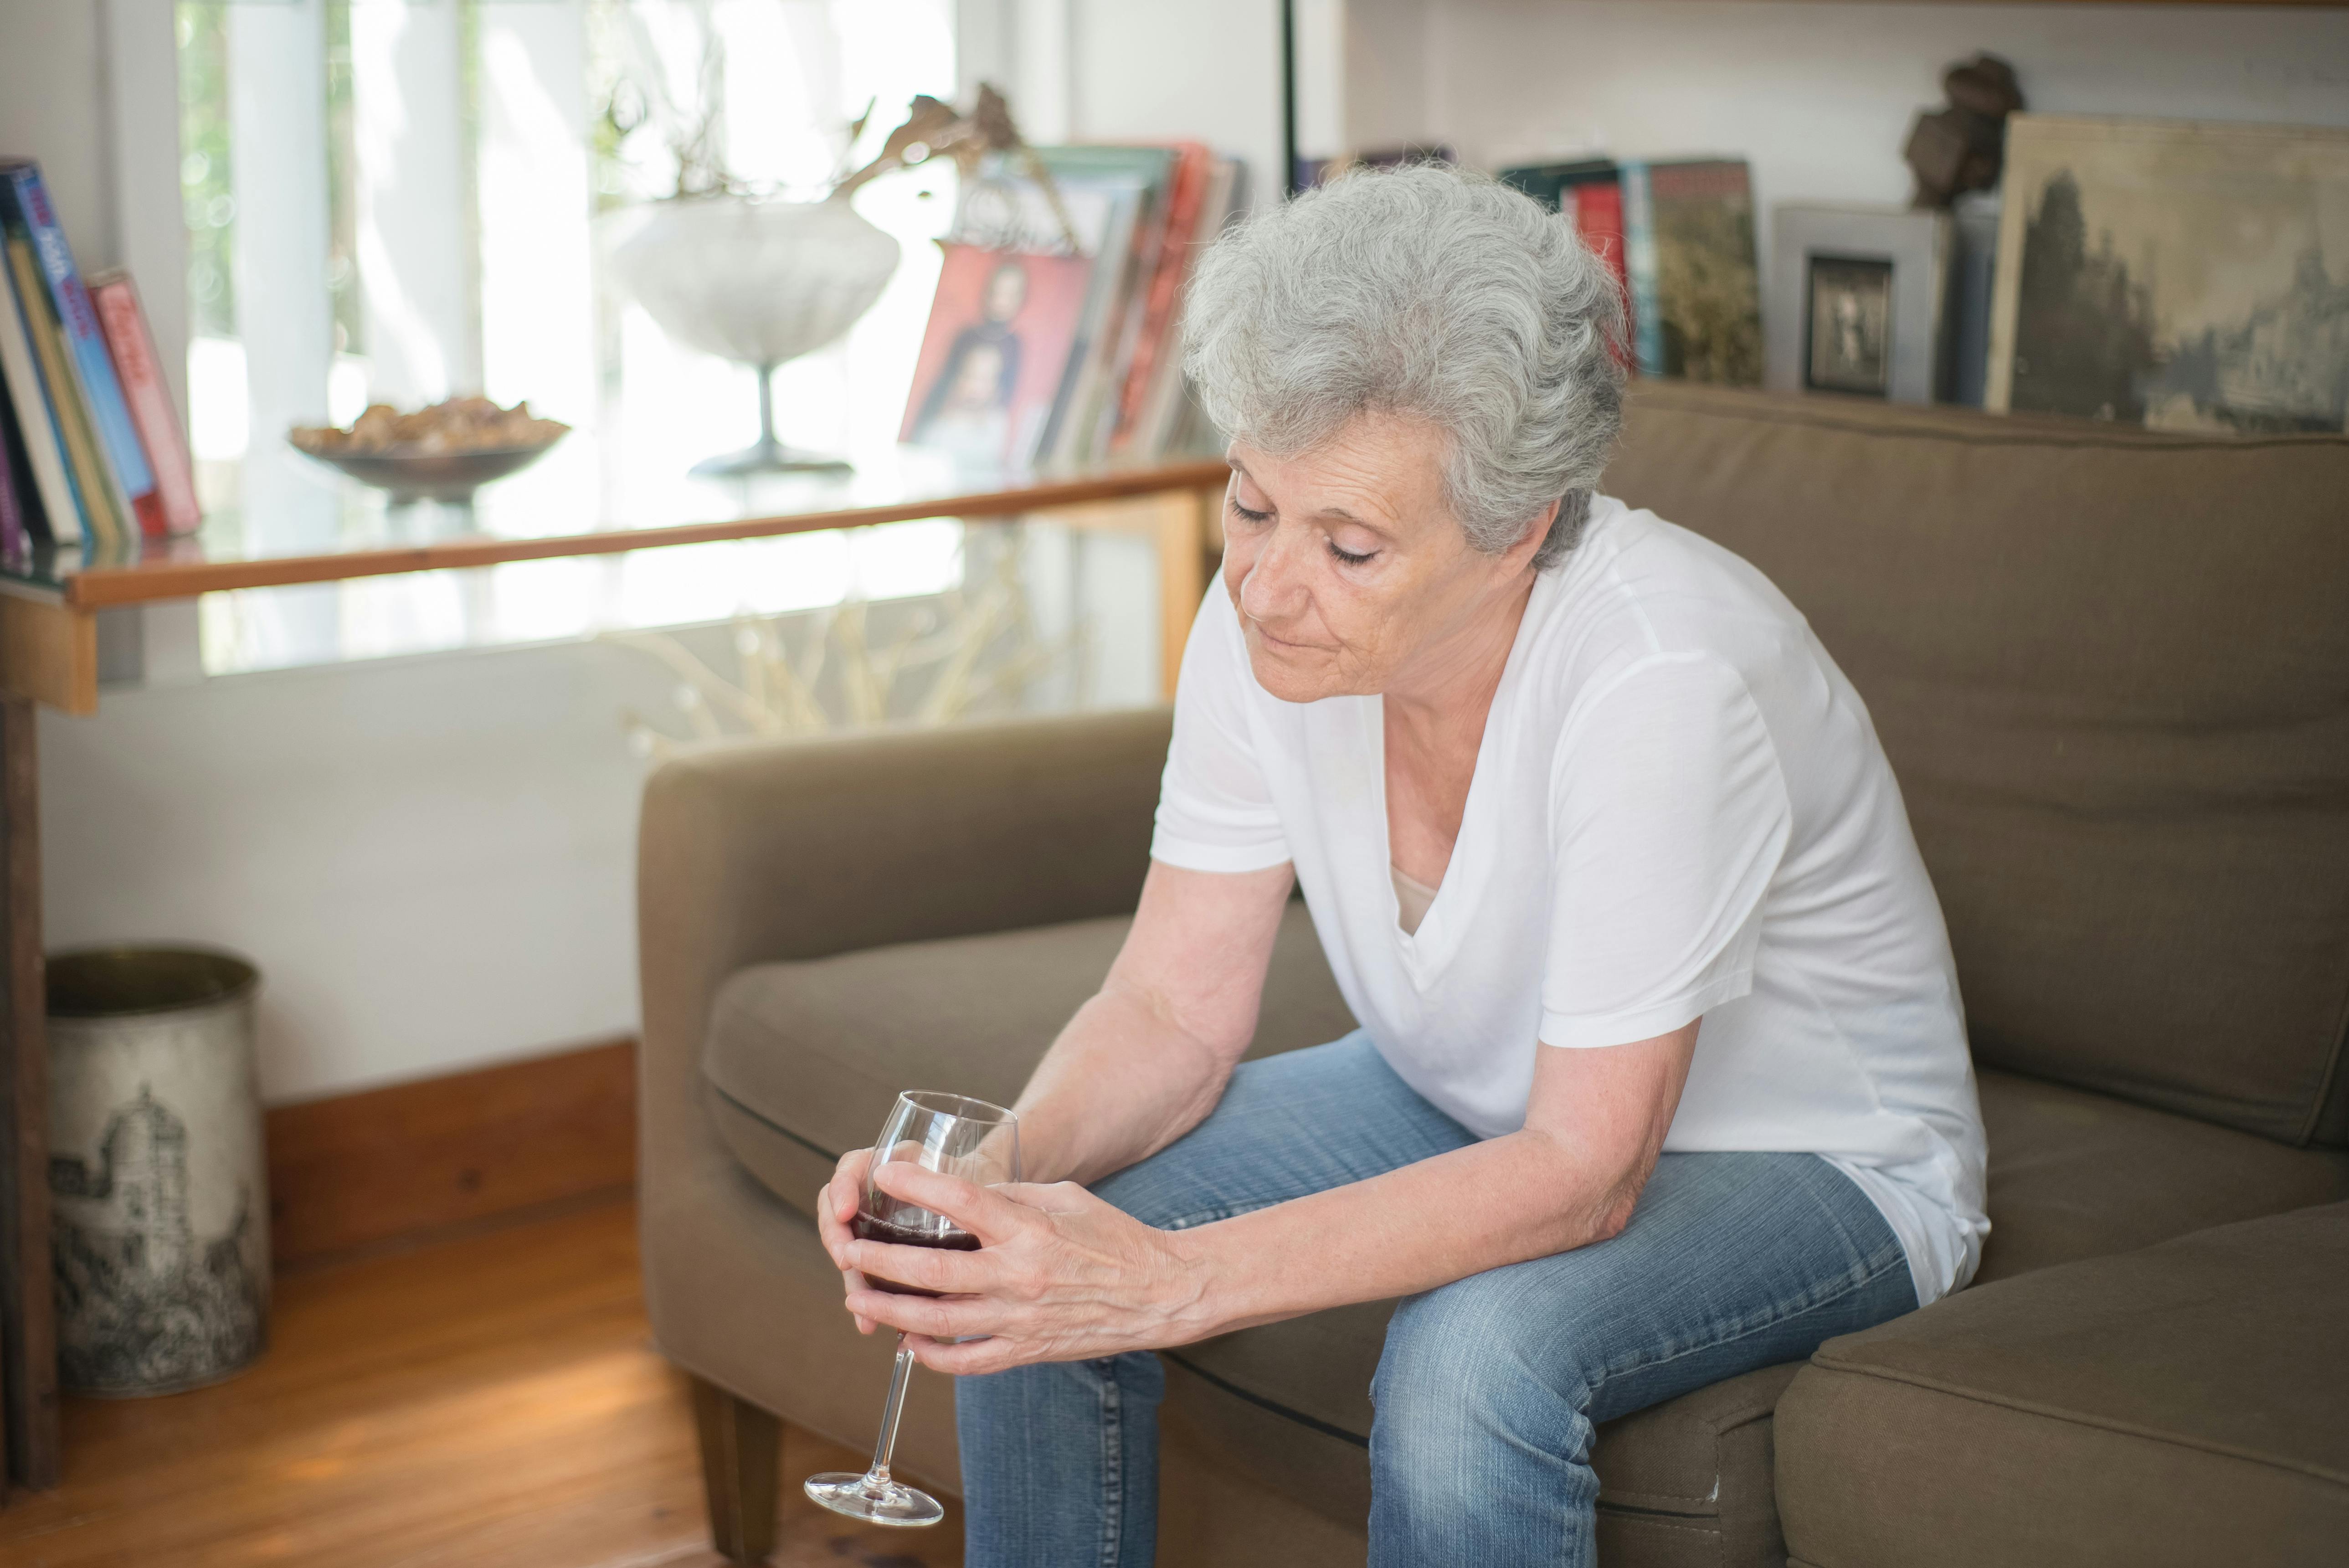 Eine aufgebrachte ältere Frau hält ein Glas Wein in der Hand, während sie auf einer Couch sitzt | Quelle: Pexels